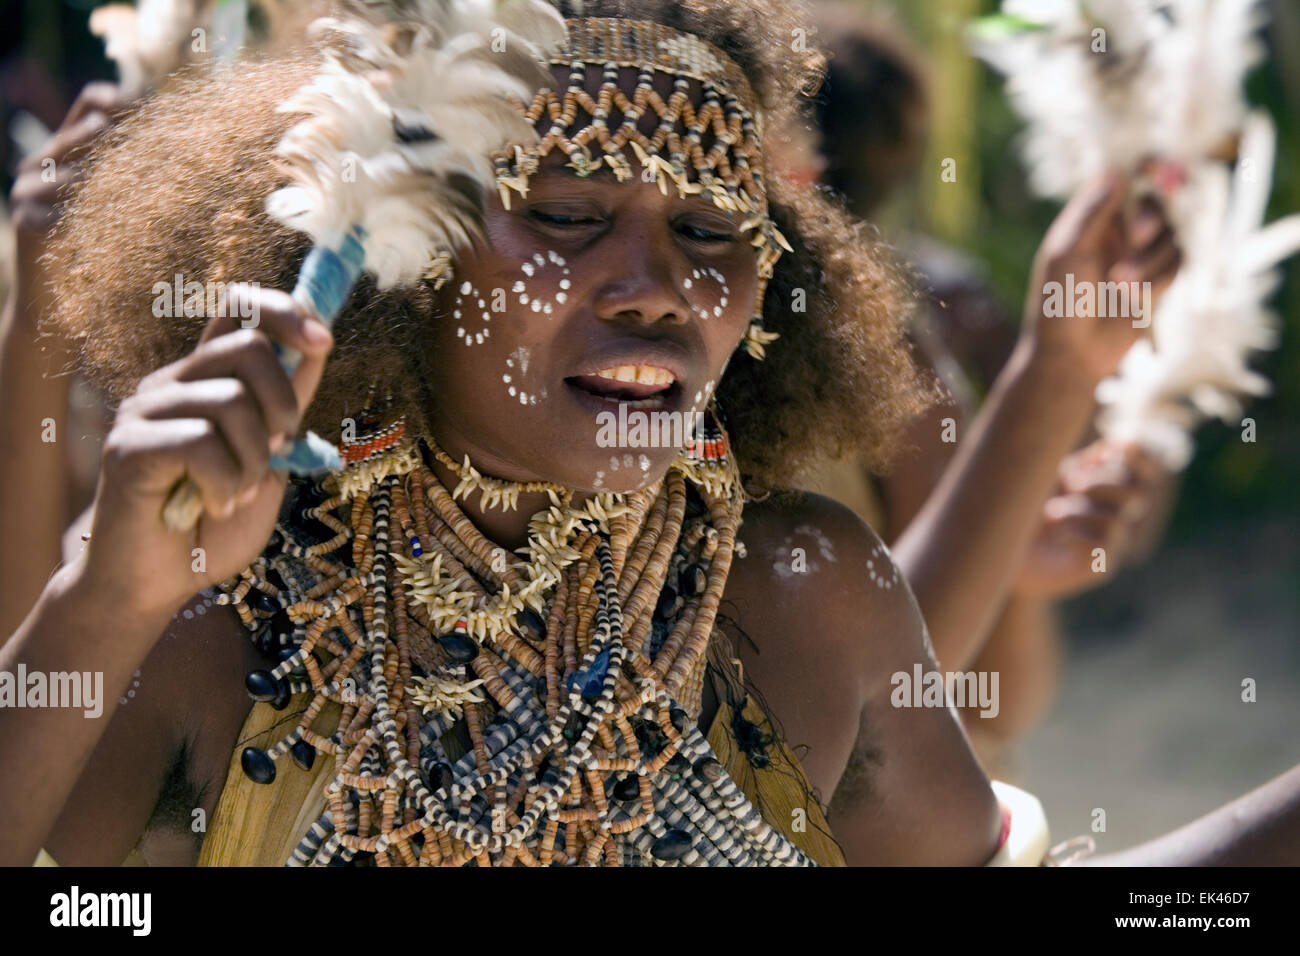 Garder leur culture vivante, les jeunes de l'île de Nggela ont enfilé des costumes traditionnels et parée d'eux-mêmes avec des coquilles. Banque D'Images